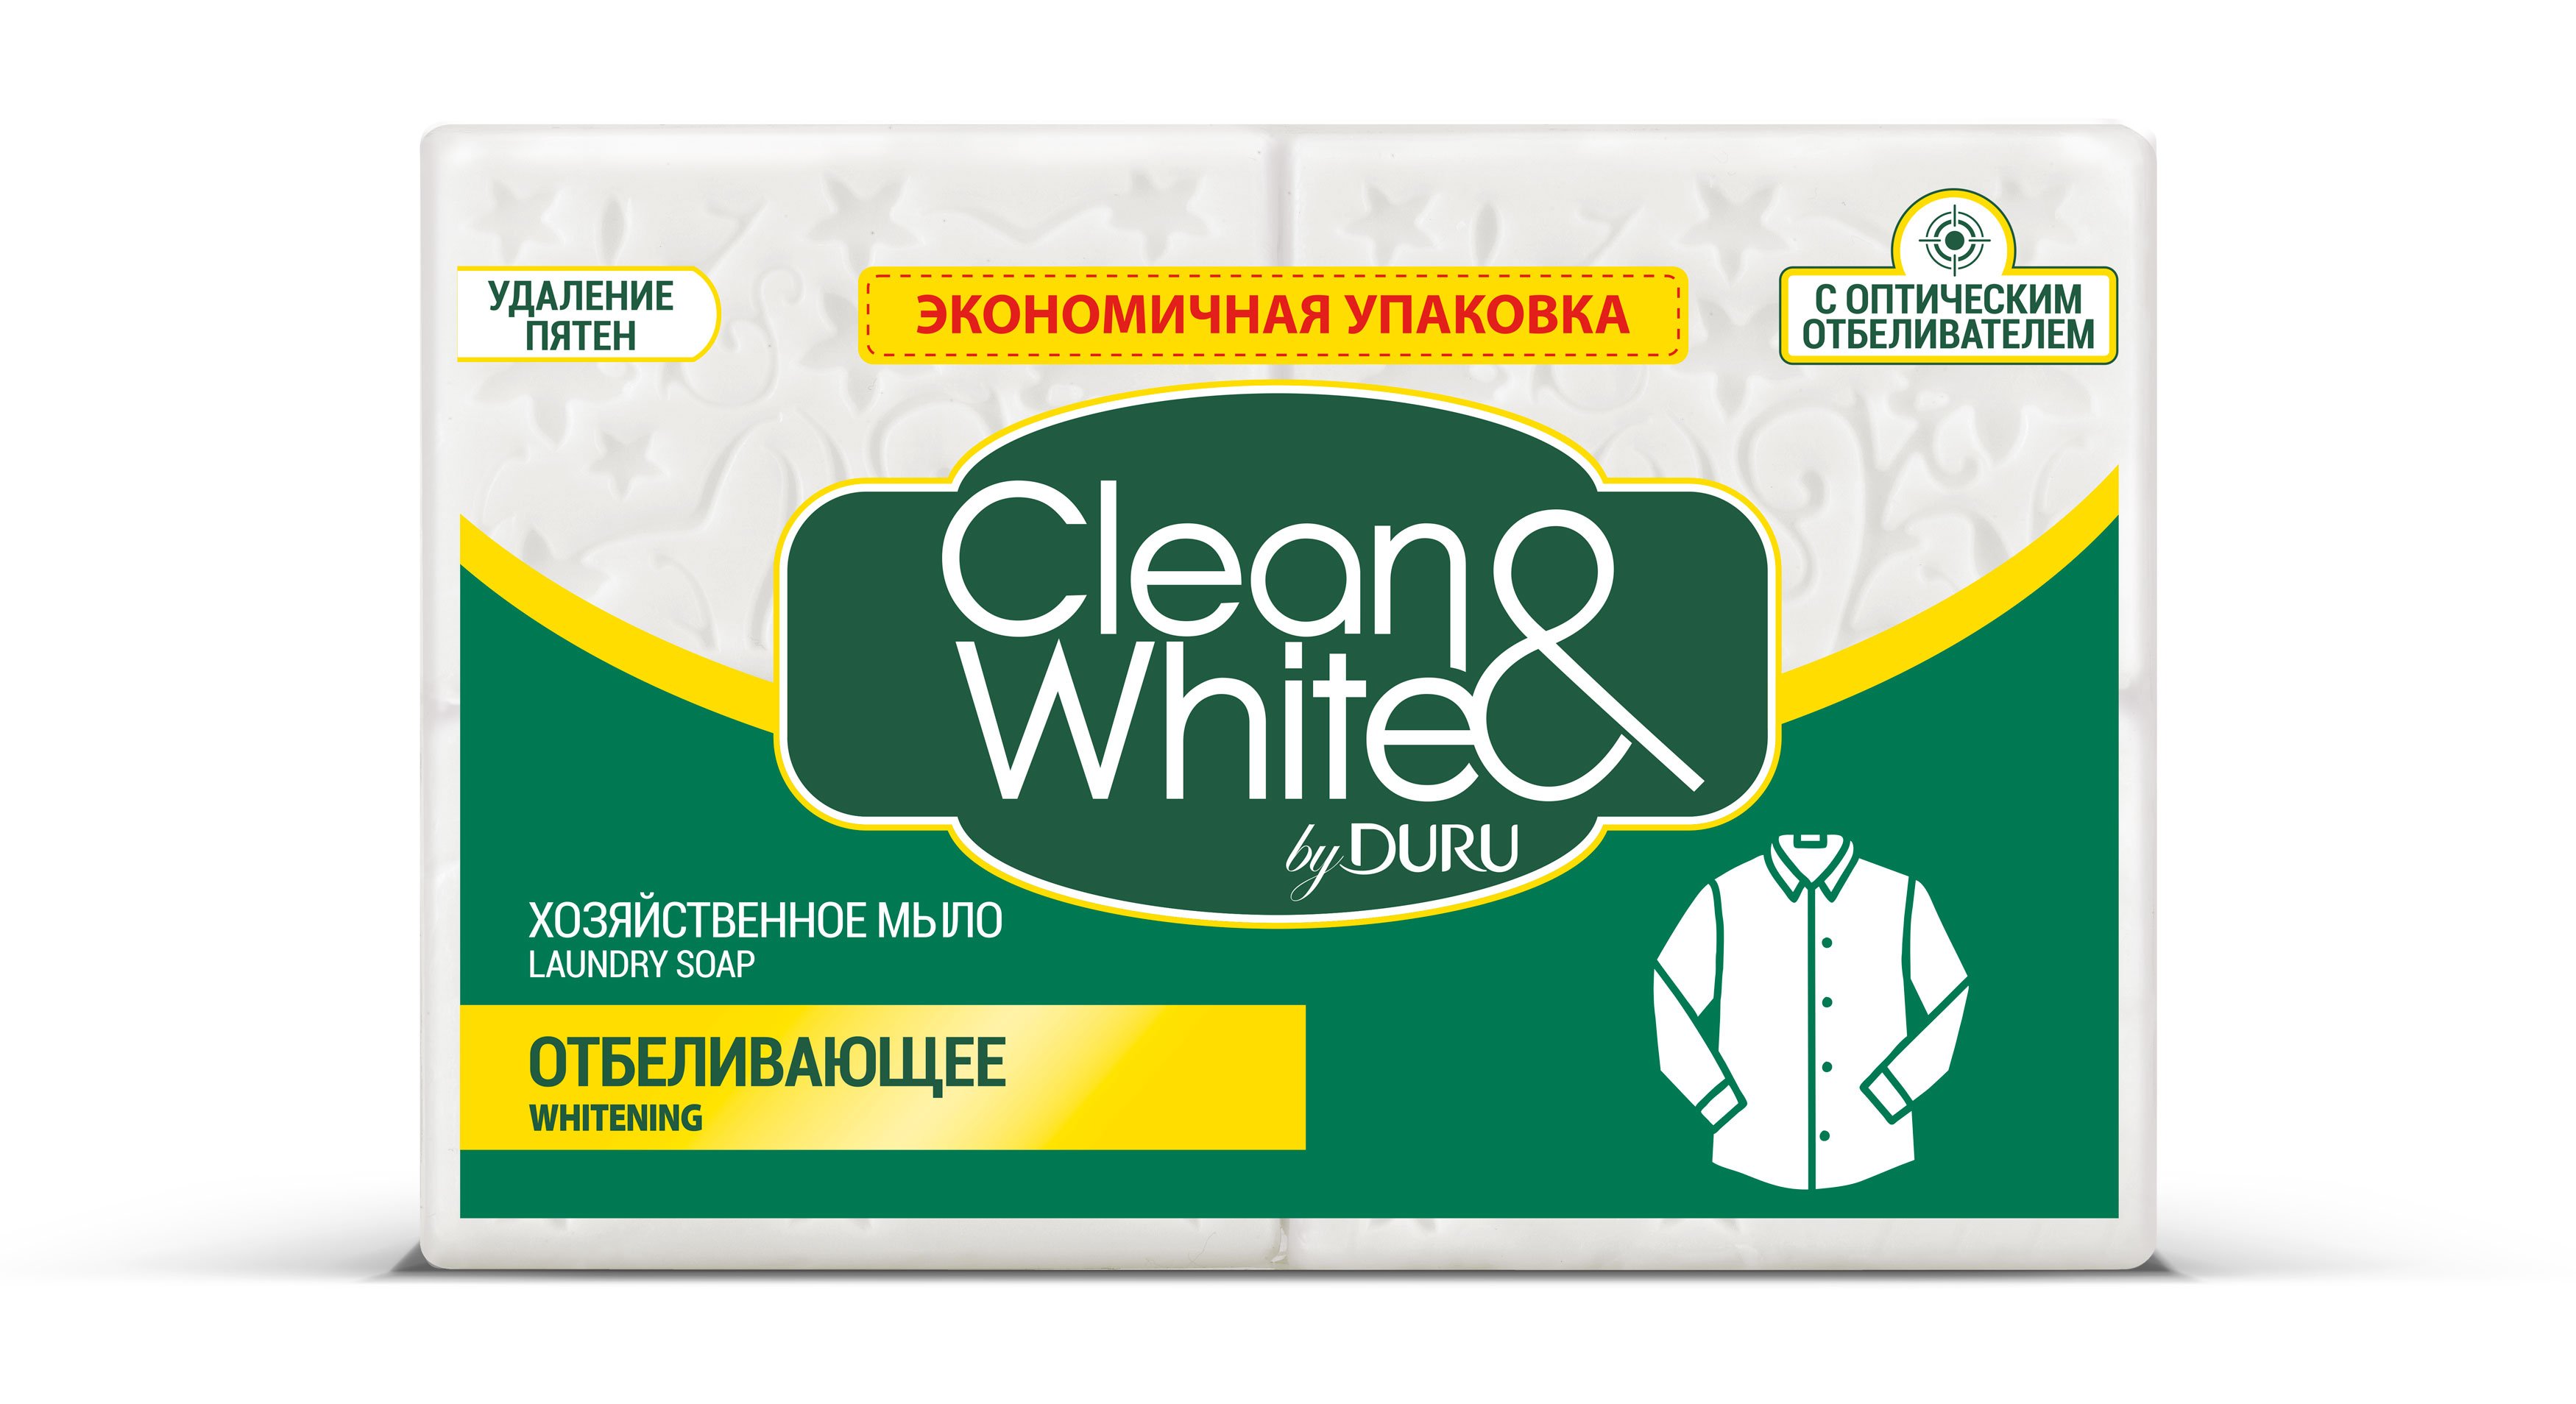 Хозяйственное мыло Duru Clean&White Отбеливающее Яблоко, 500 г (4 шт. по 125 г) - фото 1